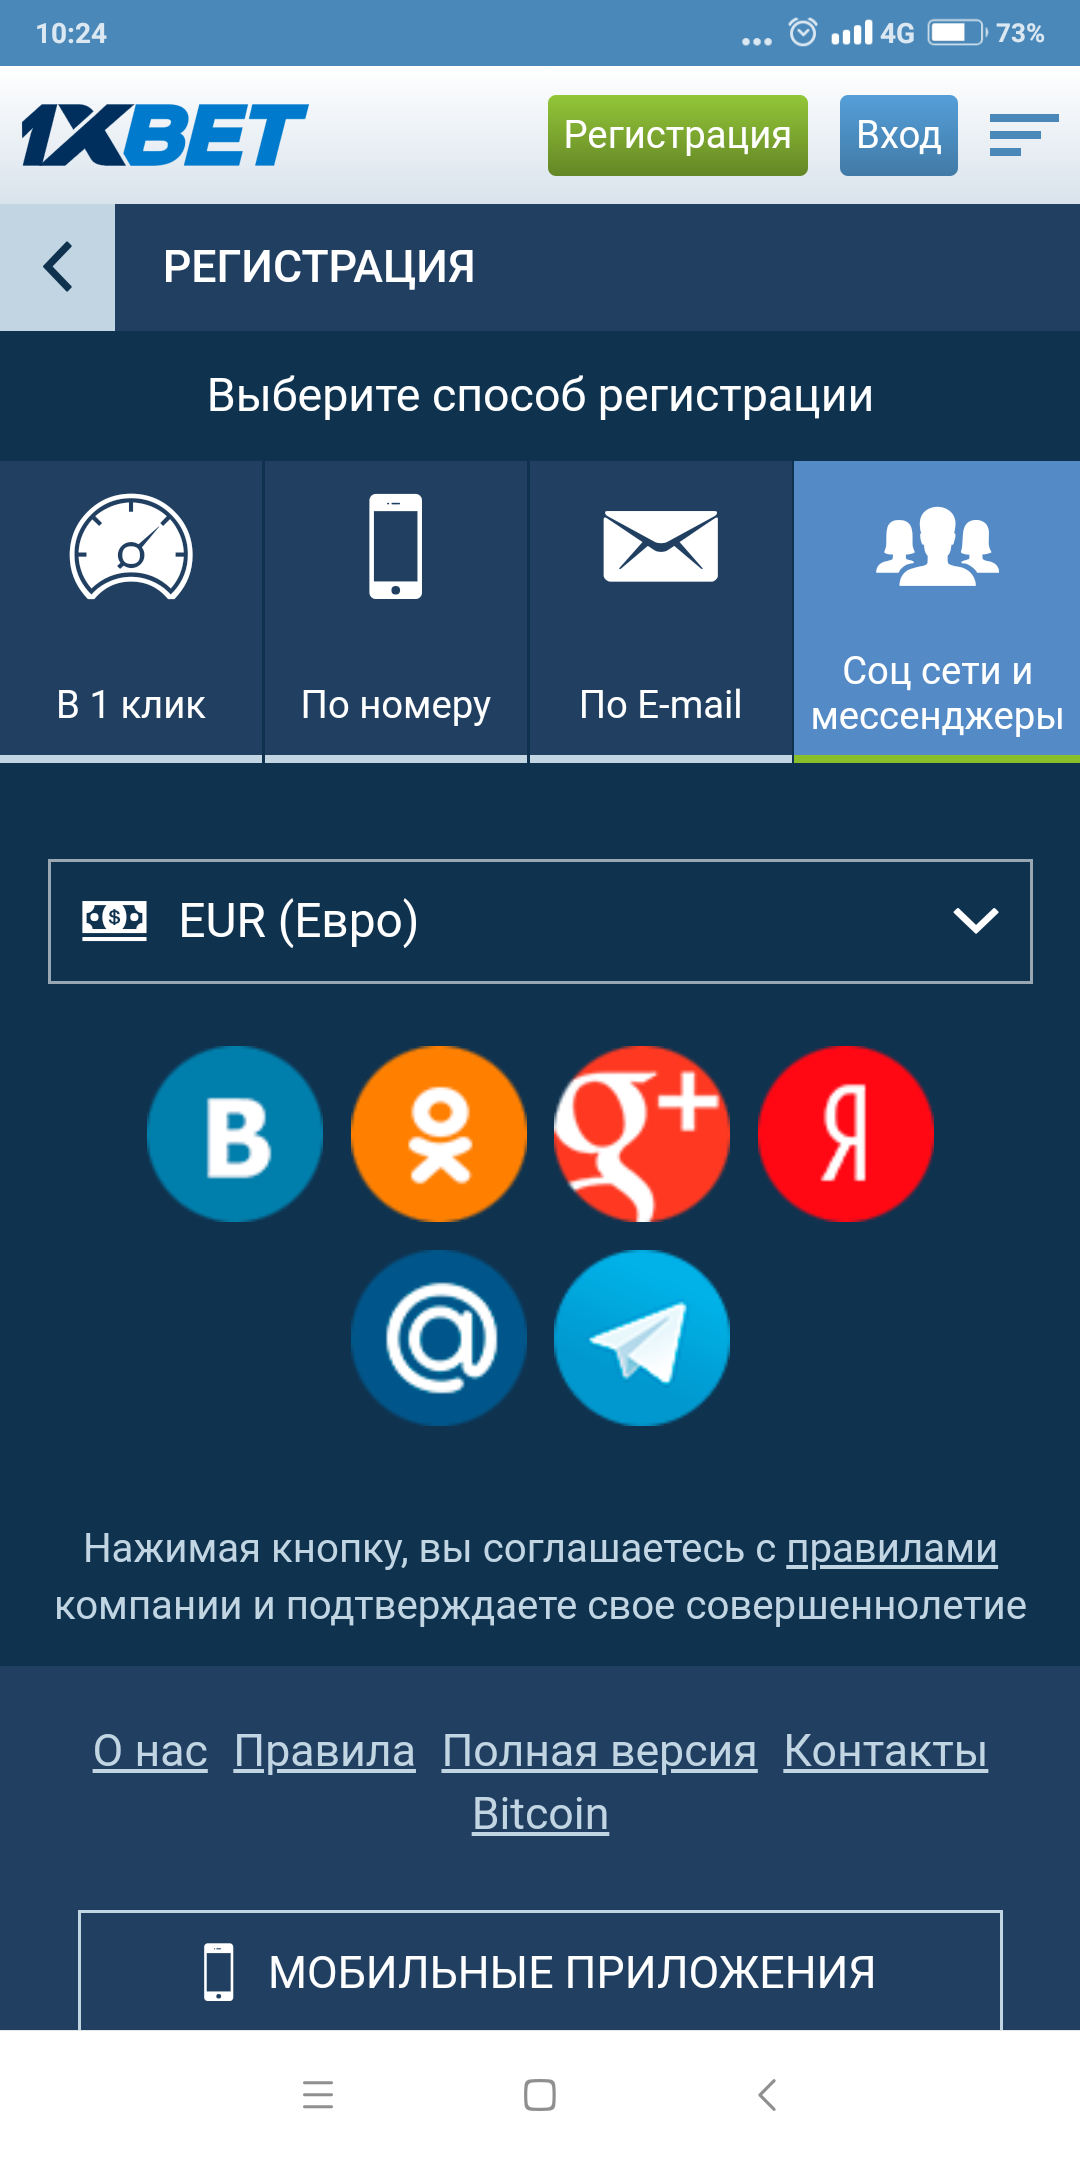 Регистрация в мобильной версии официального сайта 1xBet и через приложения